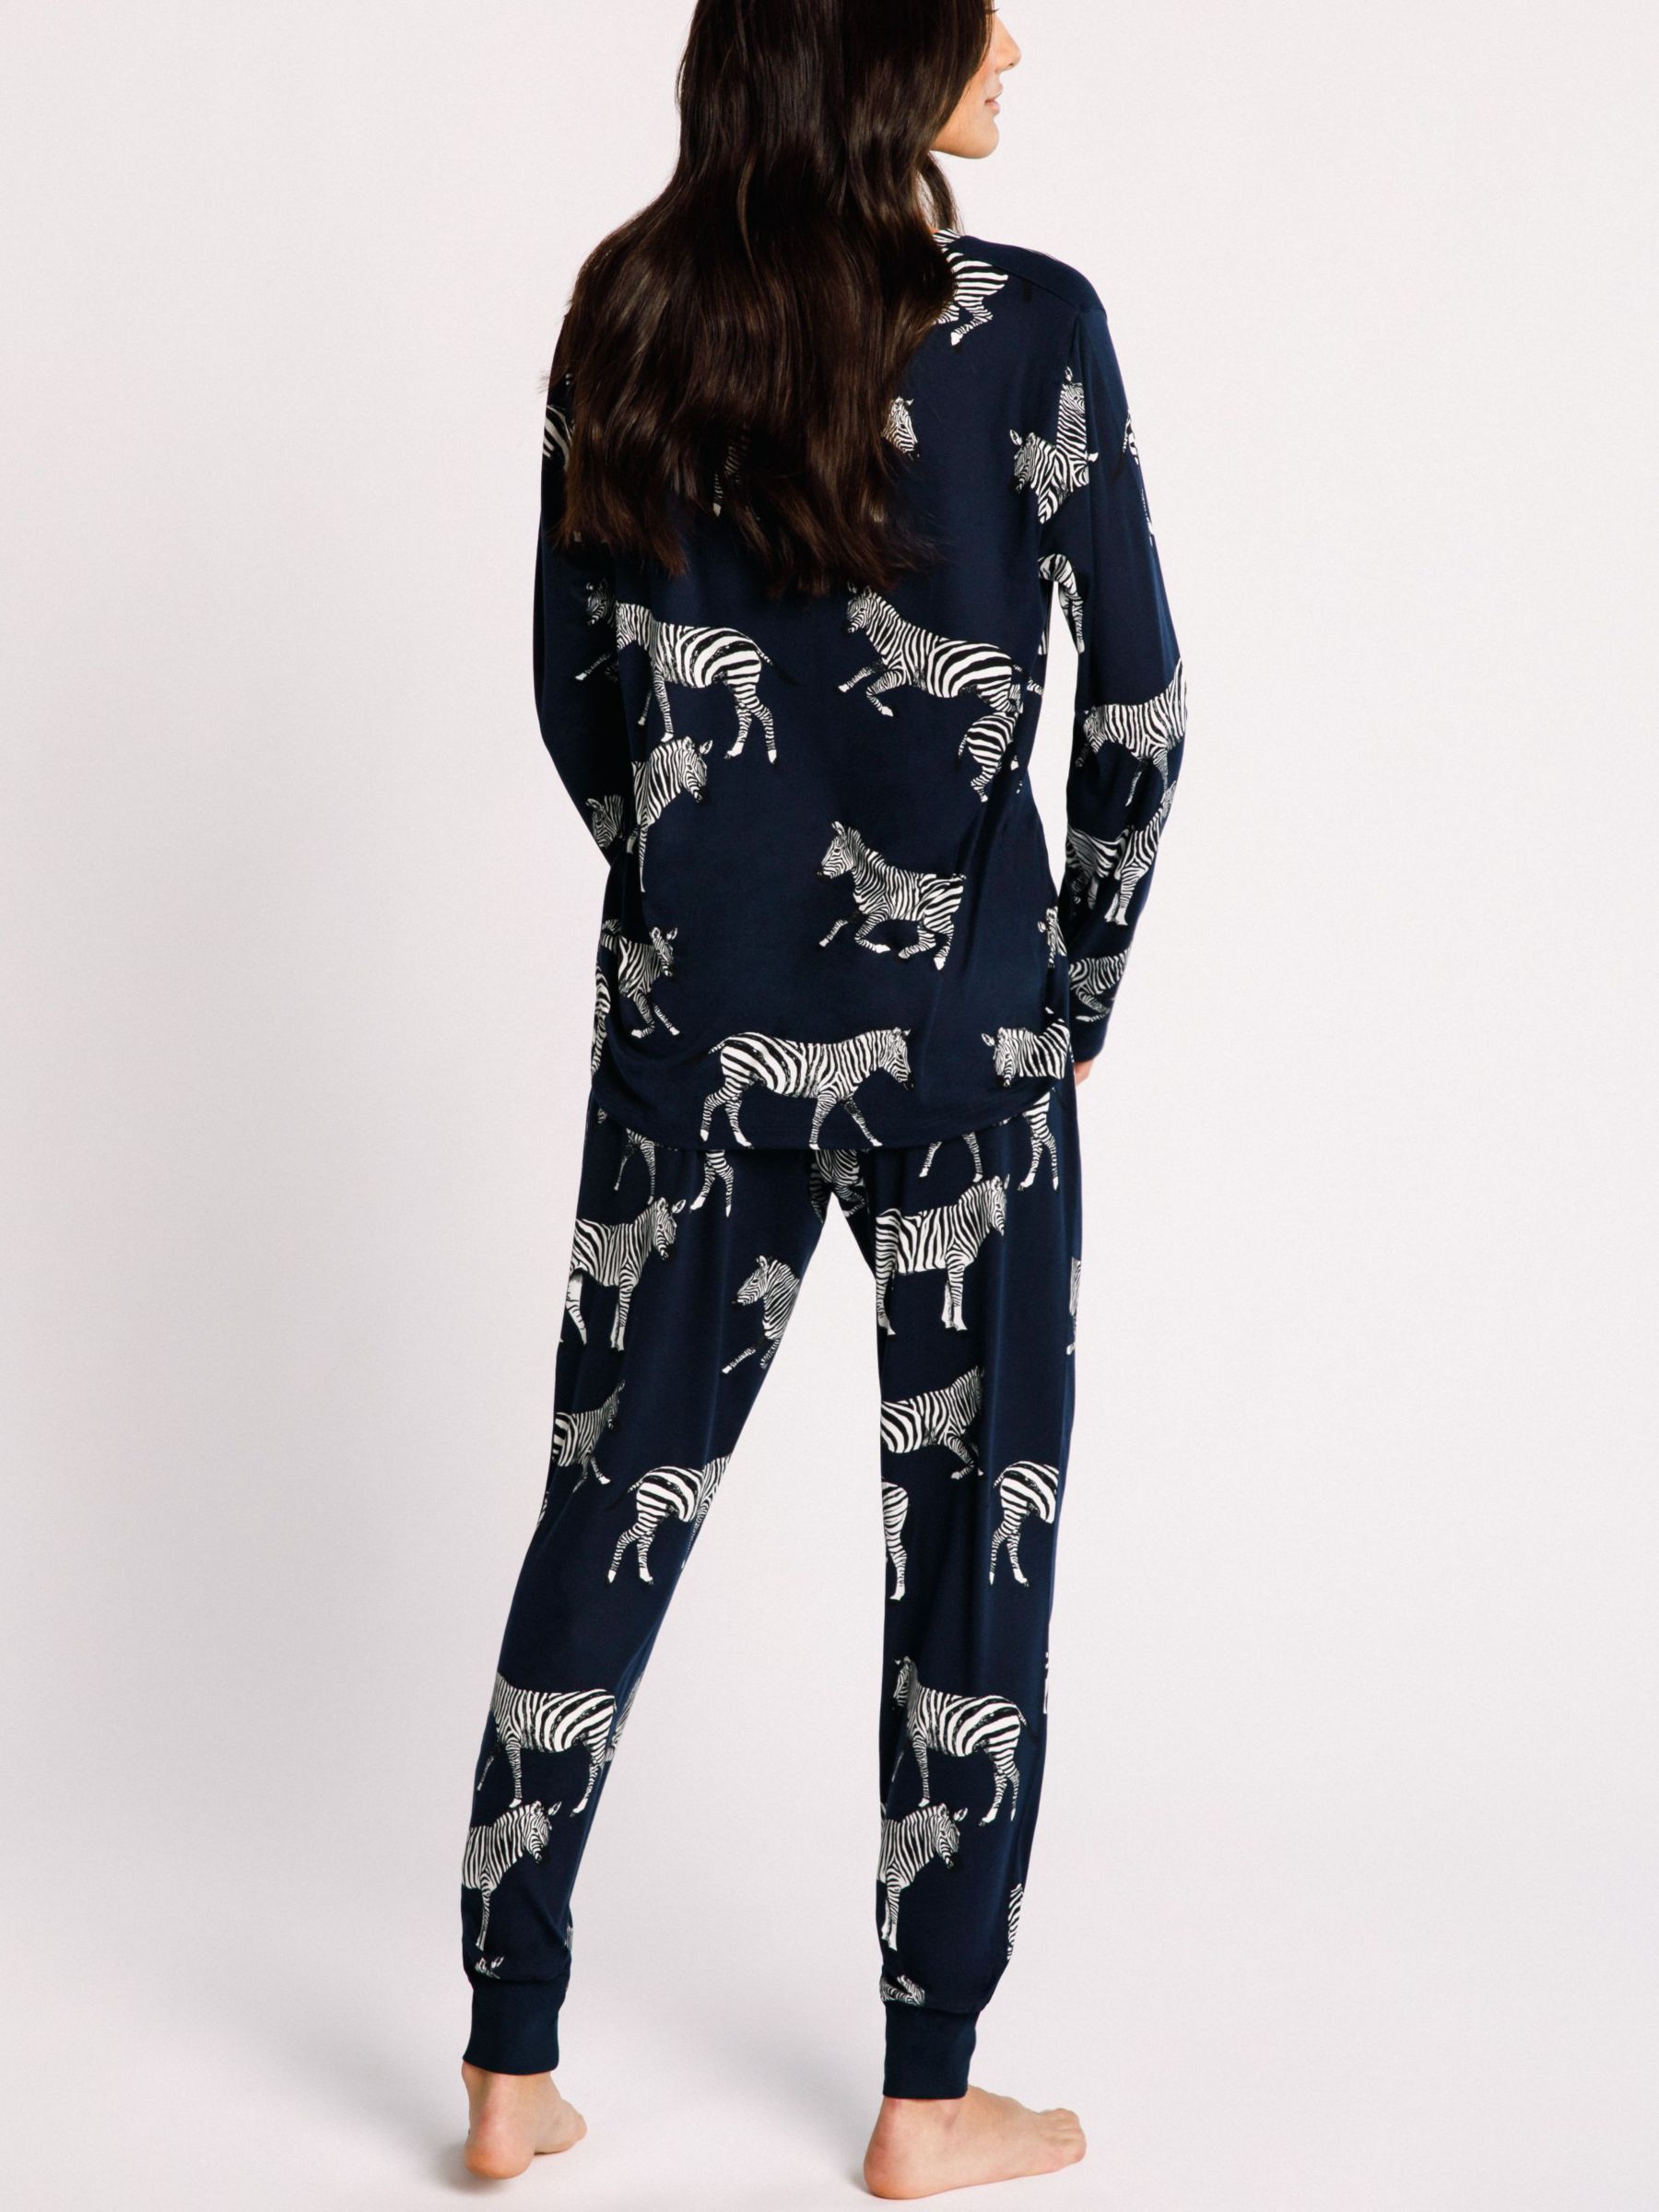 Buy Chelsea Peers Zebra Print Recycled Pyjama Set Online at johnlewis.com